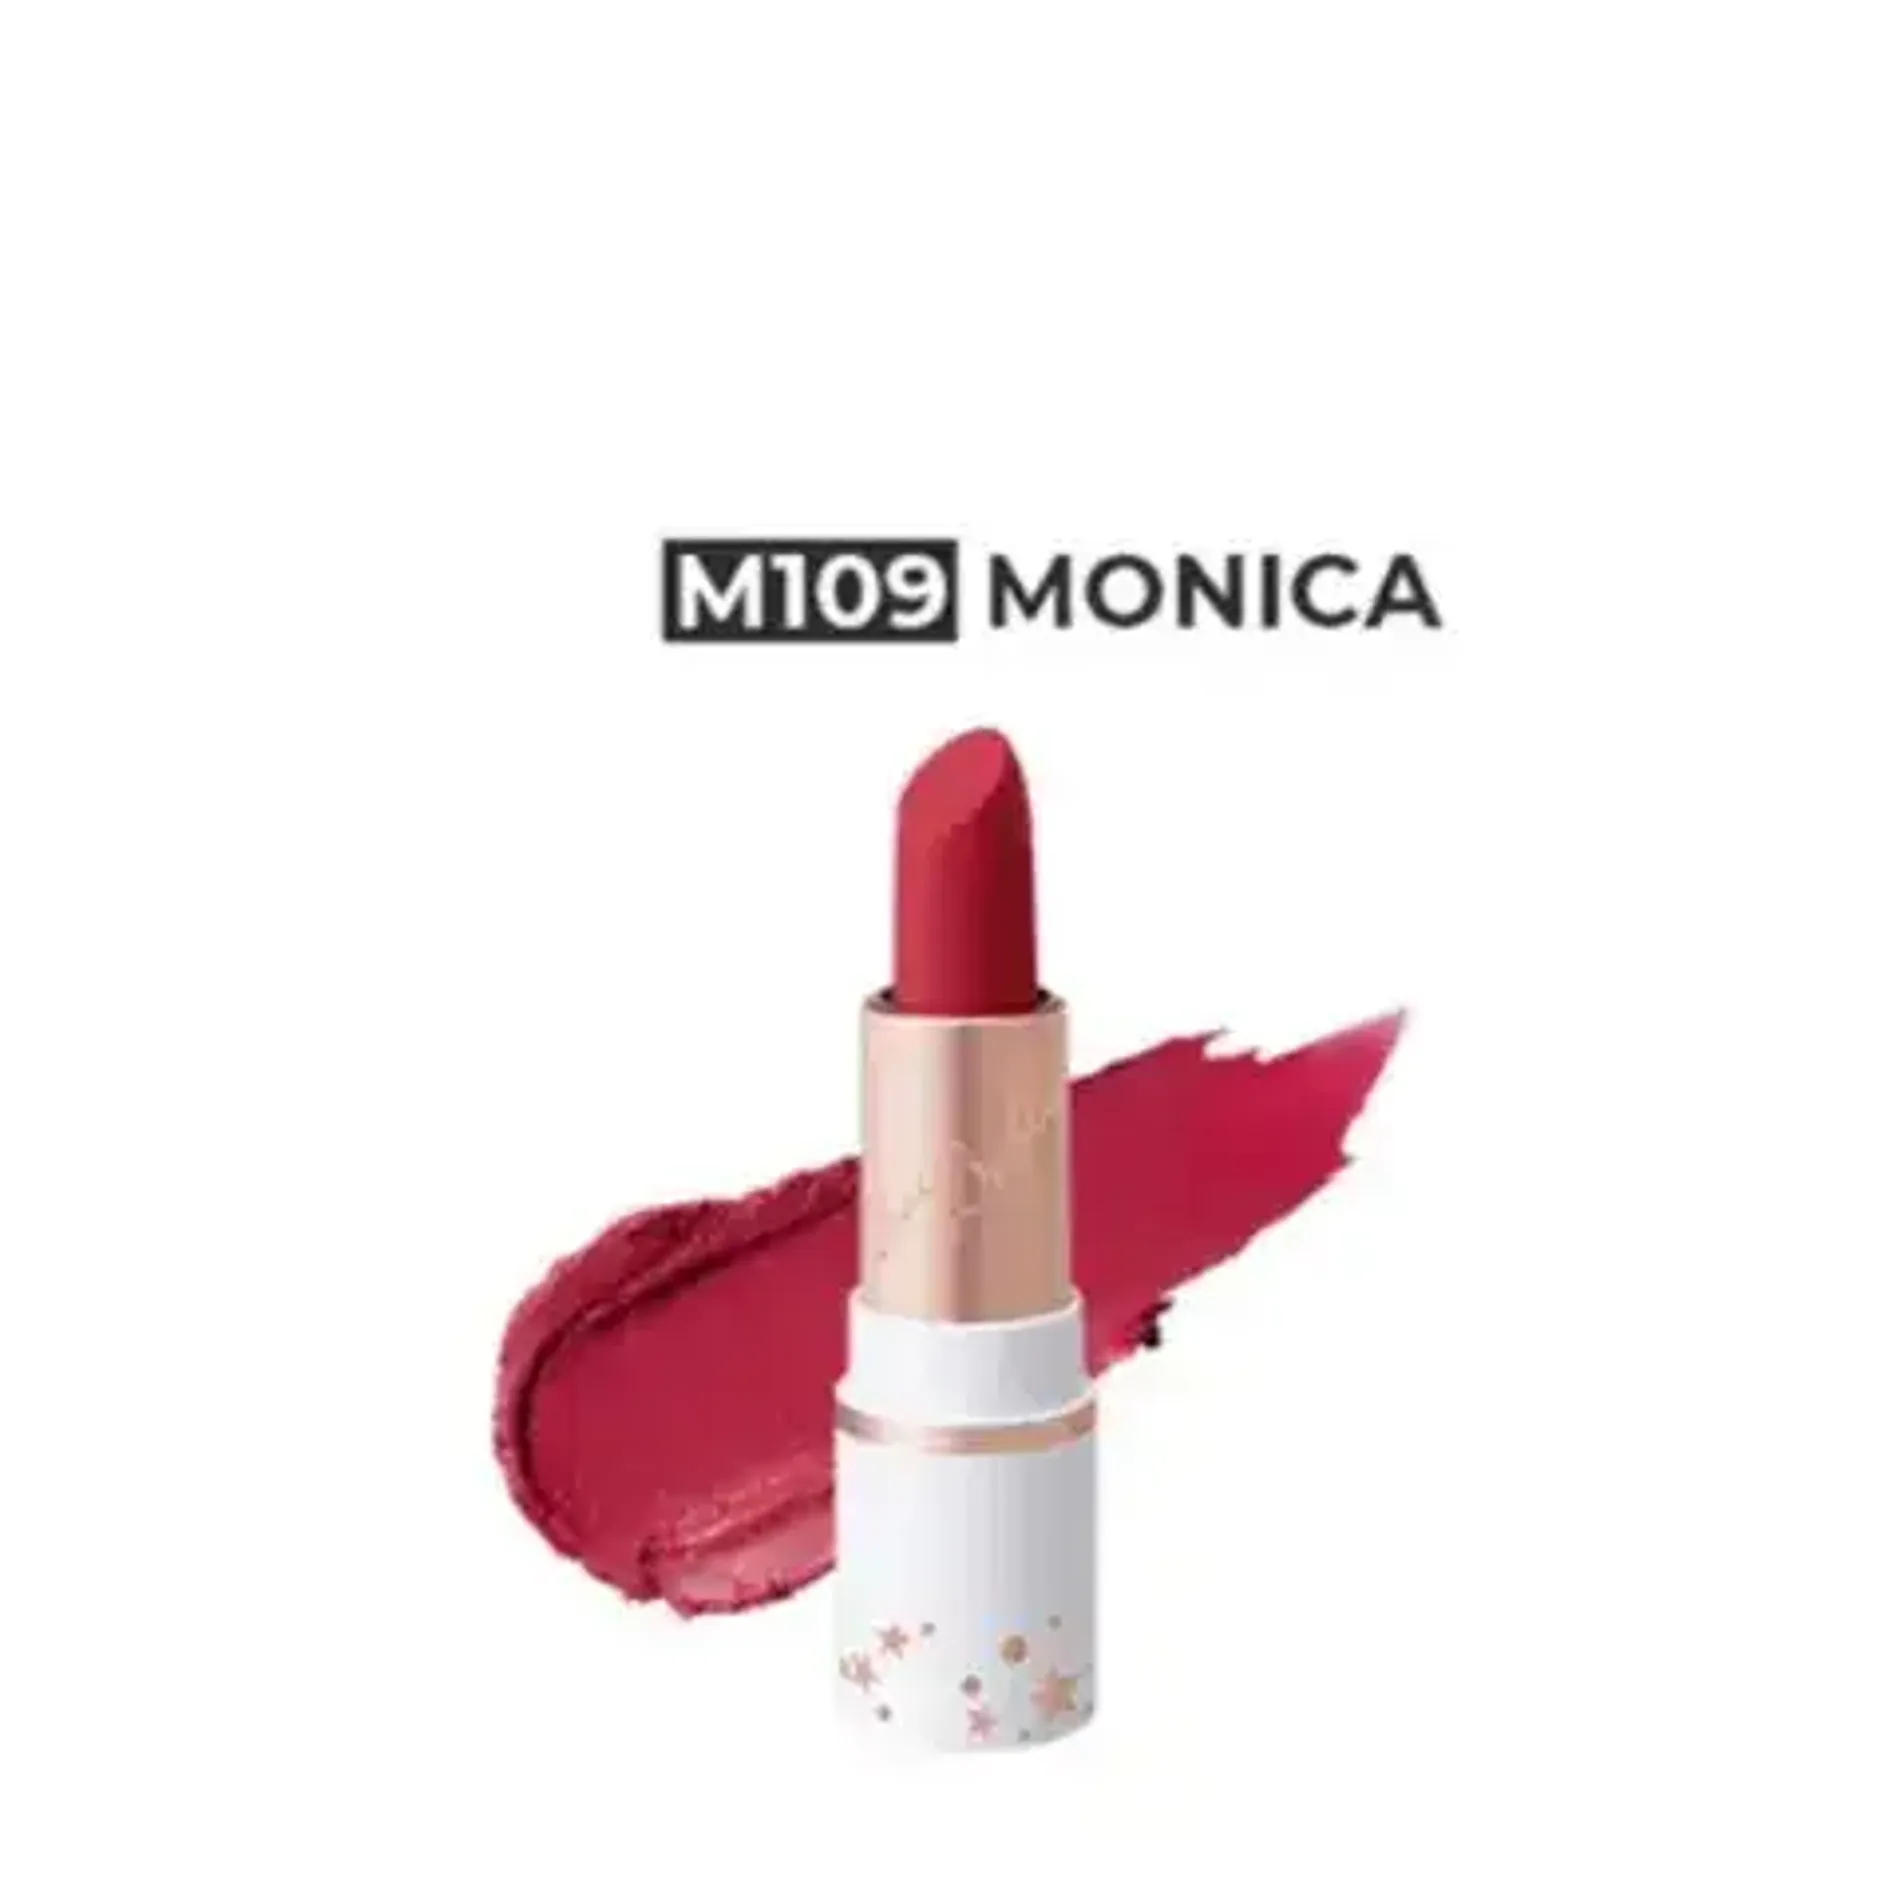 gift-son-moi-lip-paradise-effortless-matte-lipstick-mini-m109-monica-1-2g-1